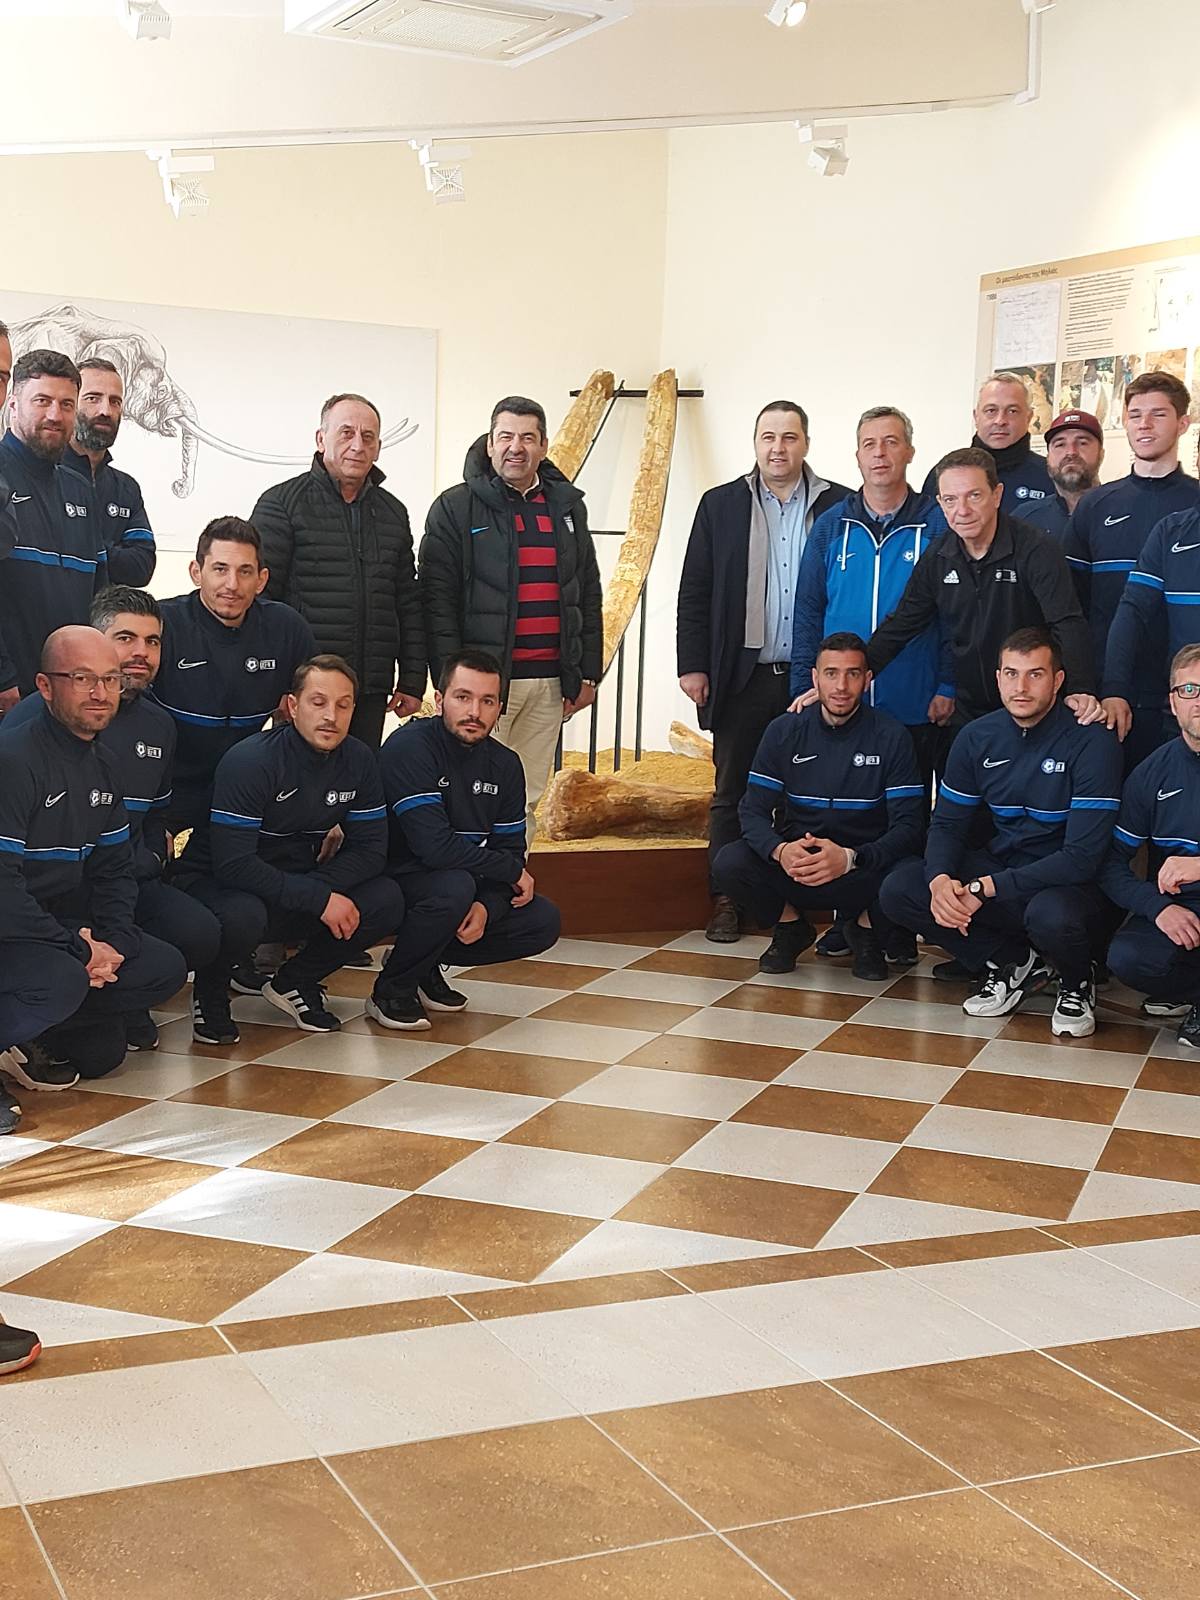 Eπίσκεψη συμμετεχόντων στην Σχολή UEFA B της ΕΠΟ στο Μουσείο Φυσικής Ιστορίας της Μηλιάς